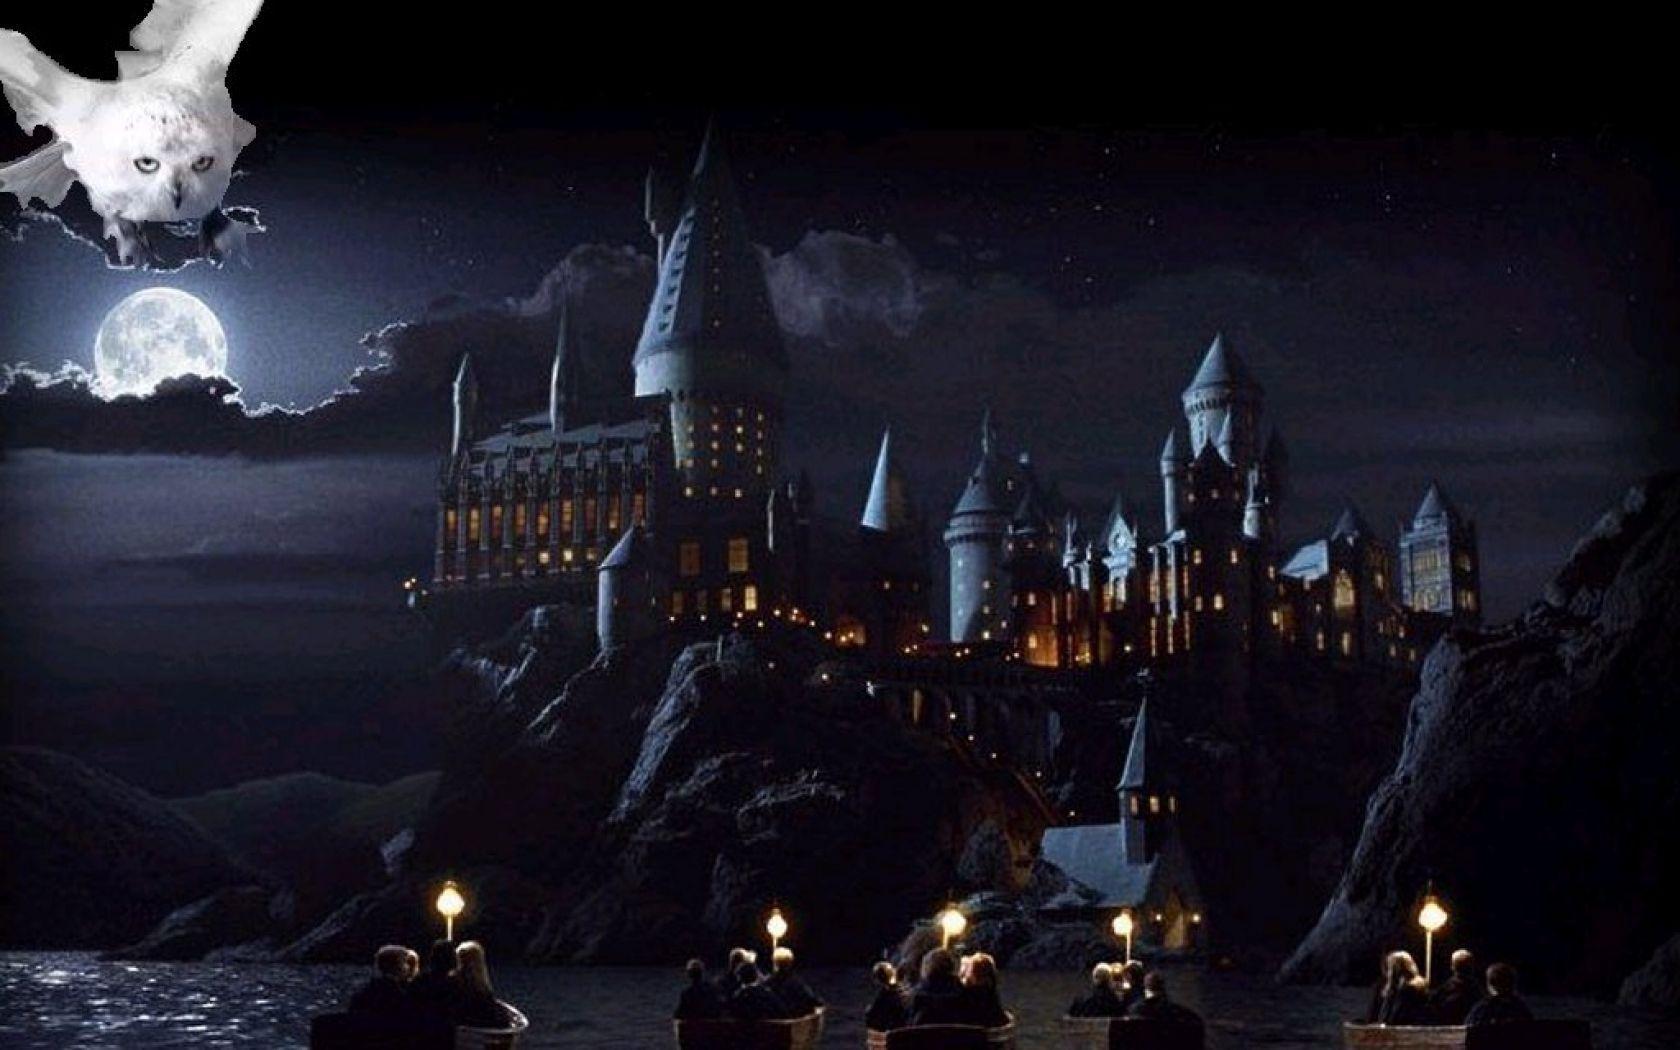 Làm việc trên máy tính trở nên thú vị hơn với hình nền lâu đài Hogwarts trong bộ sưu tập ảnh nền Harry Potter. Điều đó mang lại cho bạn cả cảm giác làm việc trong bầu không khí tràn đầy phù phép mà cũng đem đến thư giãn giữa thế giới ồn ào.